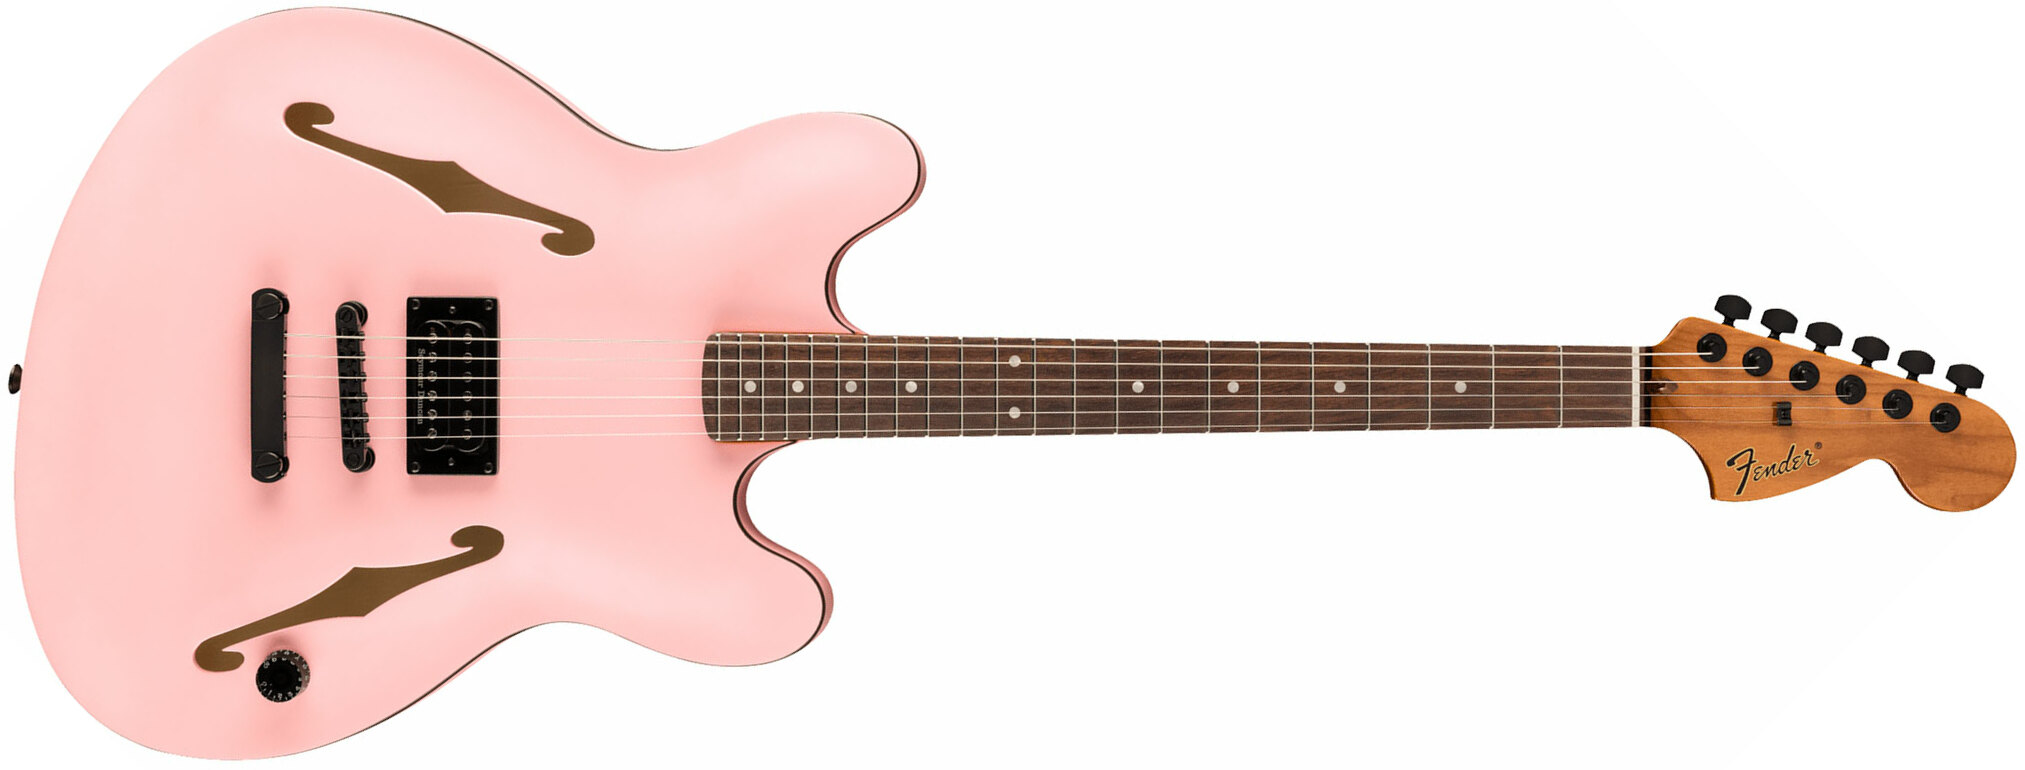 Fender Tom Delonge Starcaster Signature 1h Seymour Duncan Ht Rw - Satin Shell Pink - Guitare Électrique 1/2 Caisse - Main picture